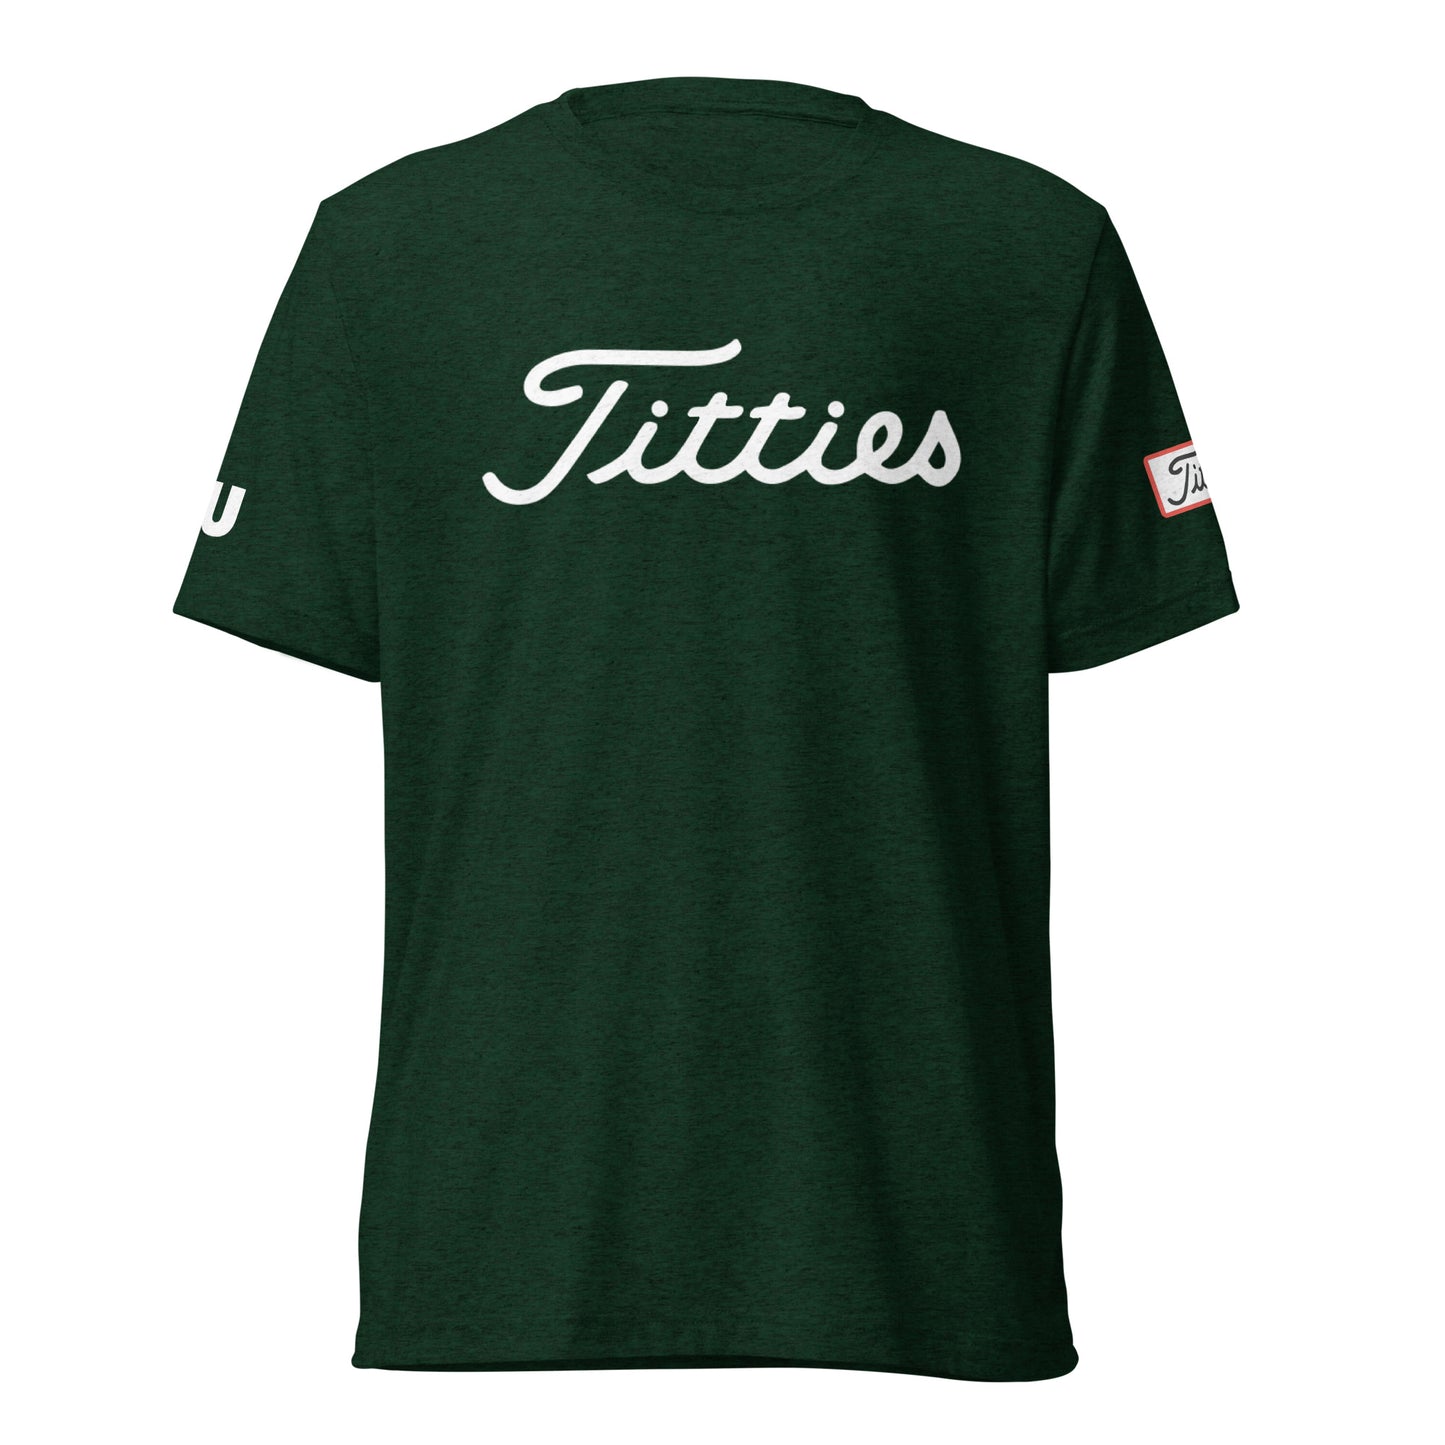 Titties T-Shirt (Limited Ed.)